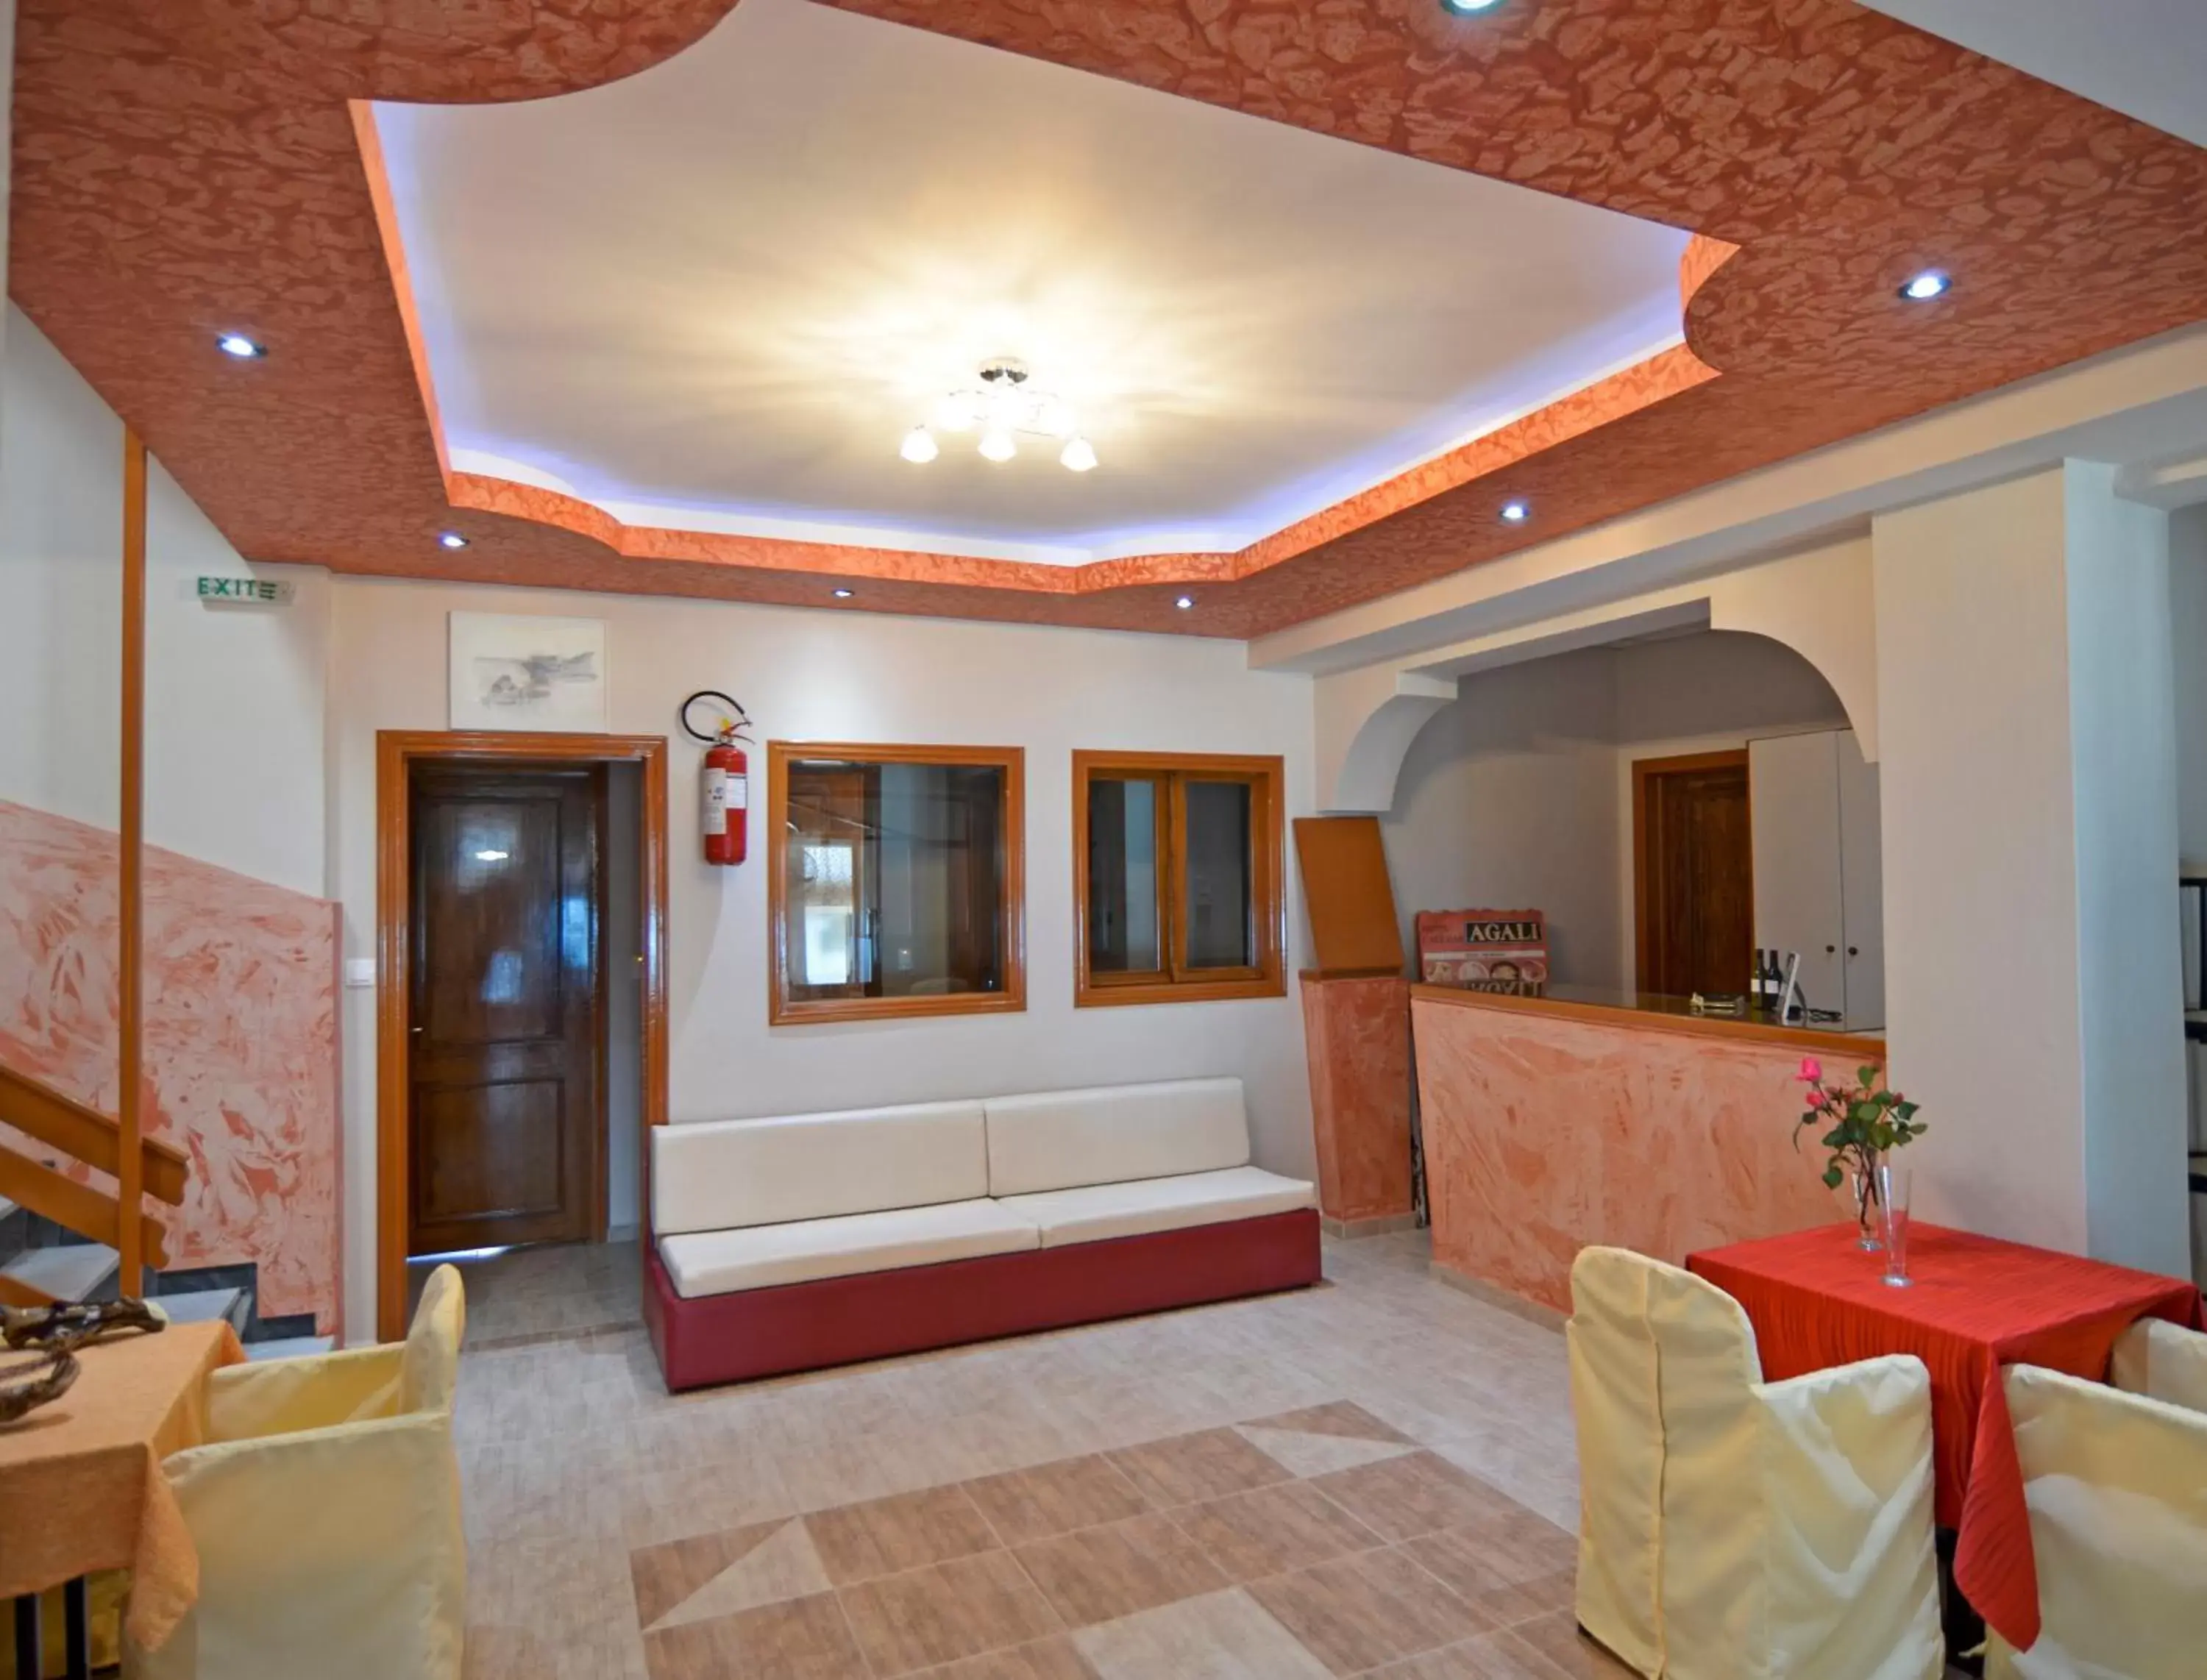 Lobby or reception, Lobby/Reception in Agali Hotel